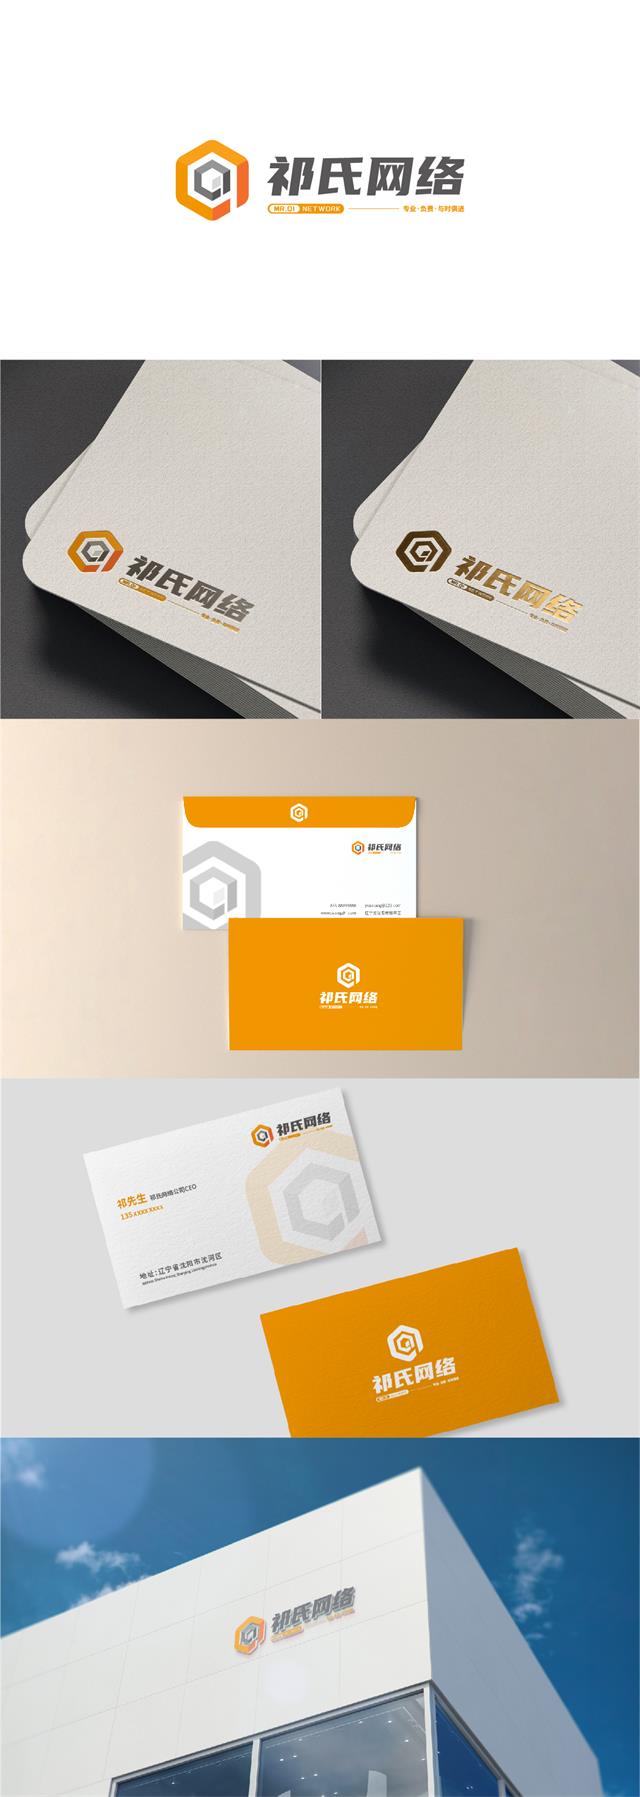 祁氏网络短视频推广公司品牌logo设计vi设计案例